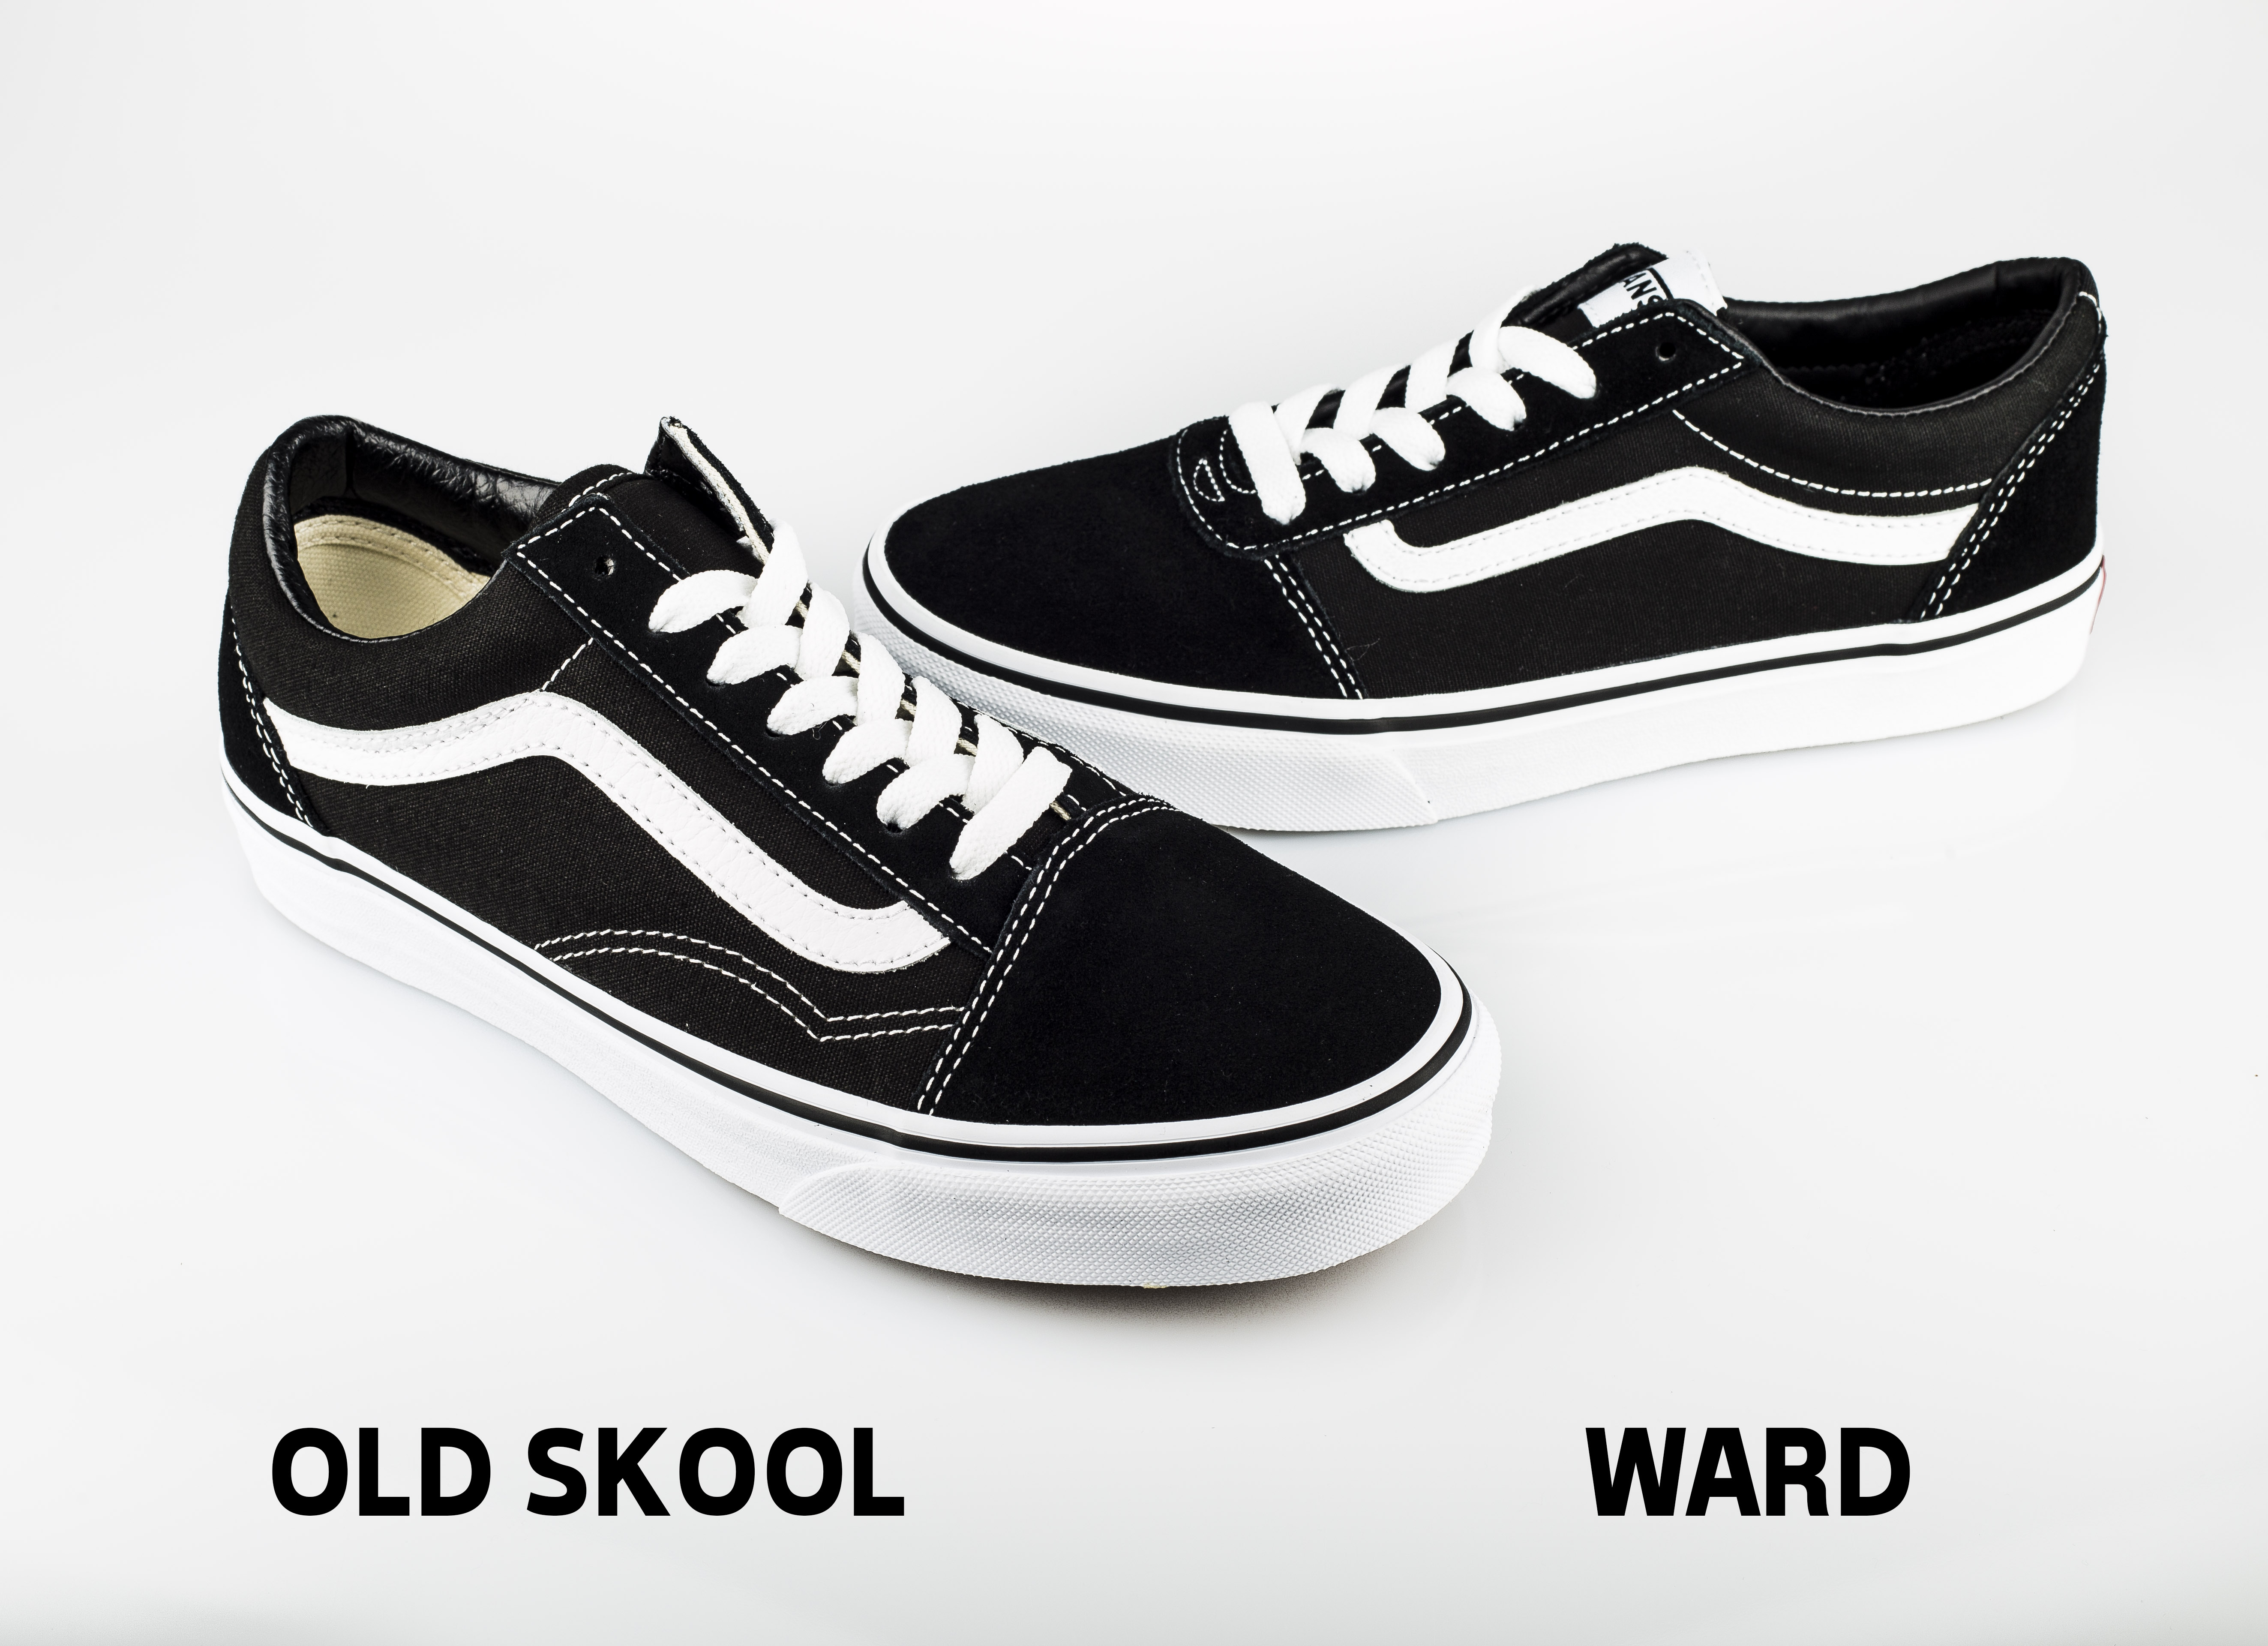 Vans Old Skool vs Vans Ward (Diferencias) - Blog sobre Skate, Surf ... ماشا